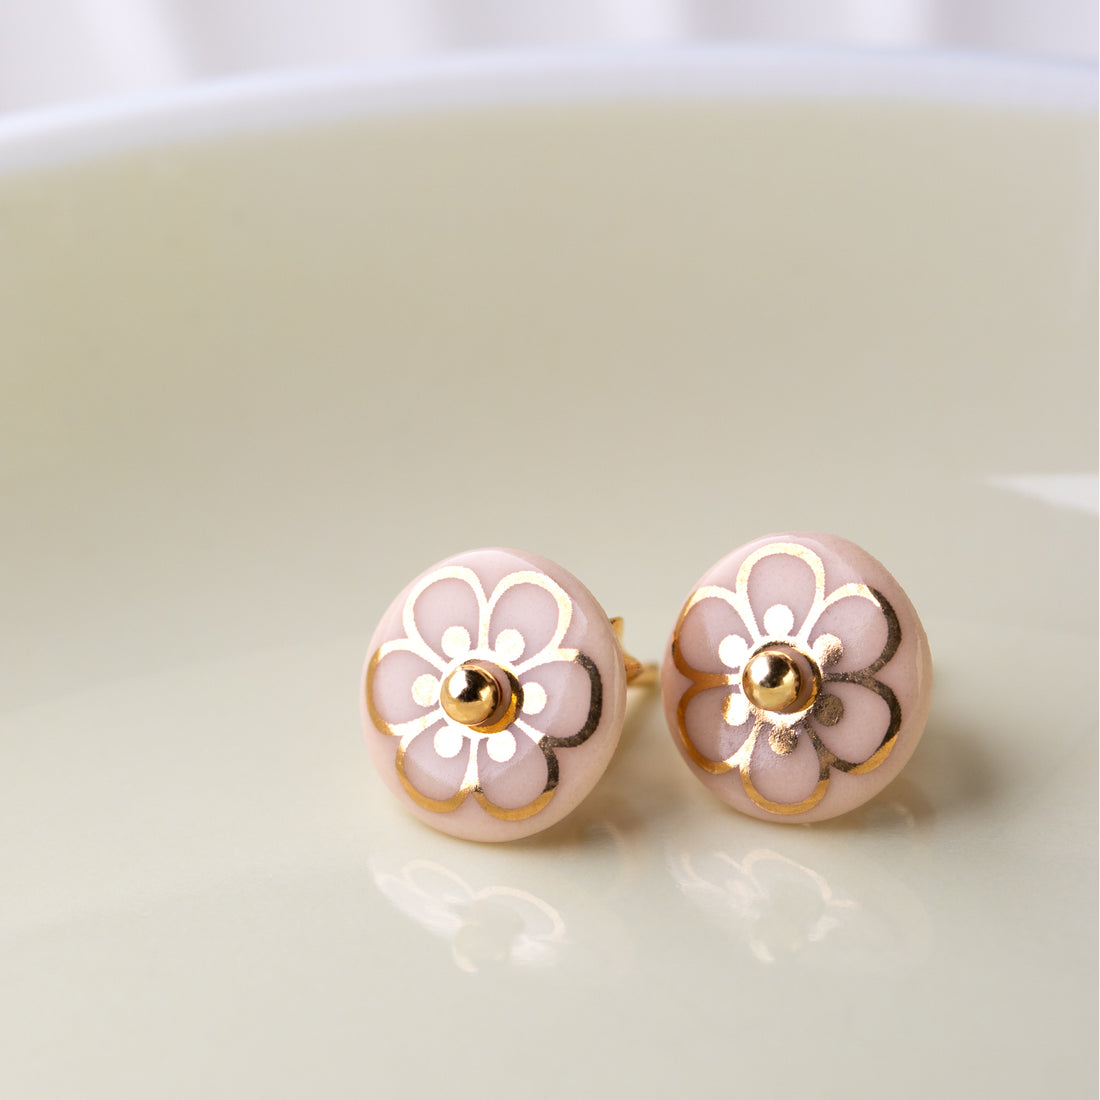 Ørestikkere af porcelæn, indfarvet i fin sart rosa, med den søde FLORA dekoration i blank guld.